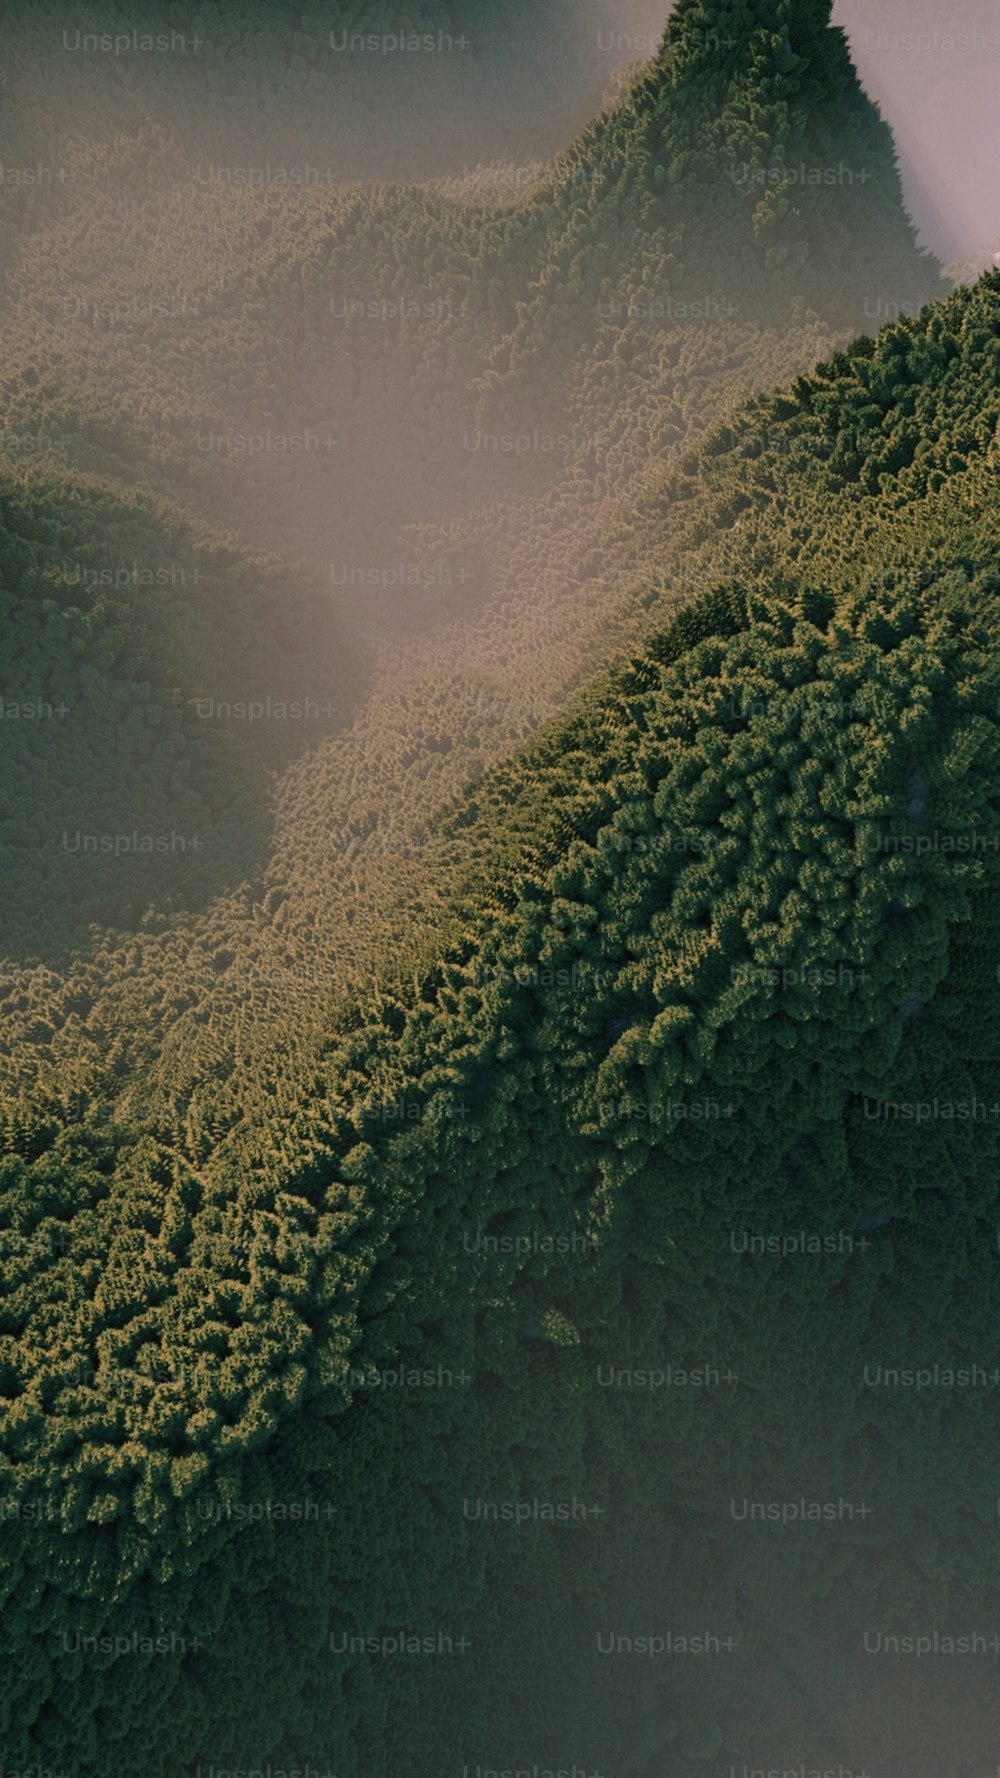 a bird's eye view of a lush green hillside